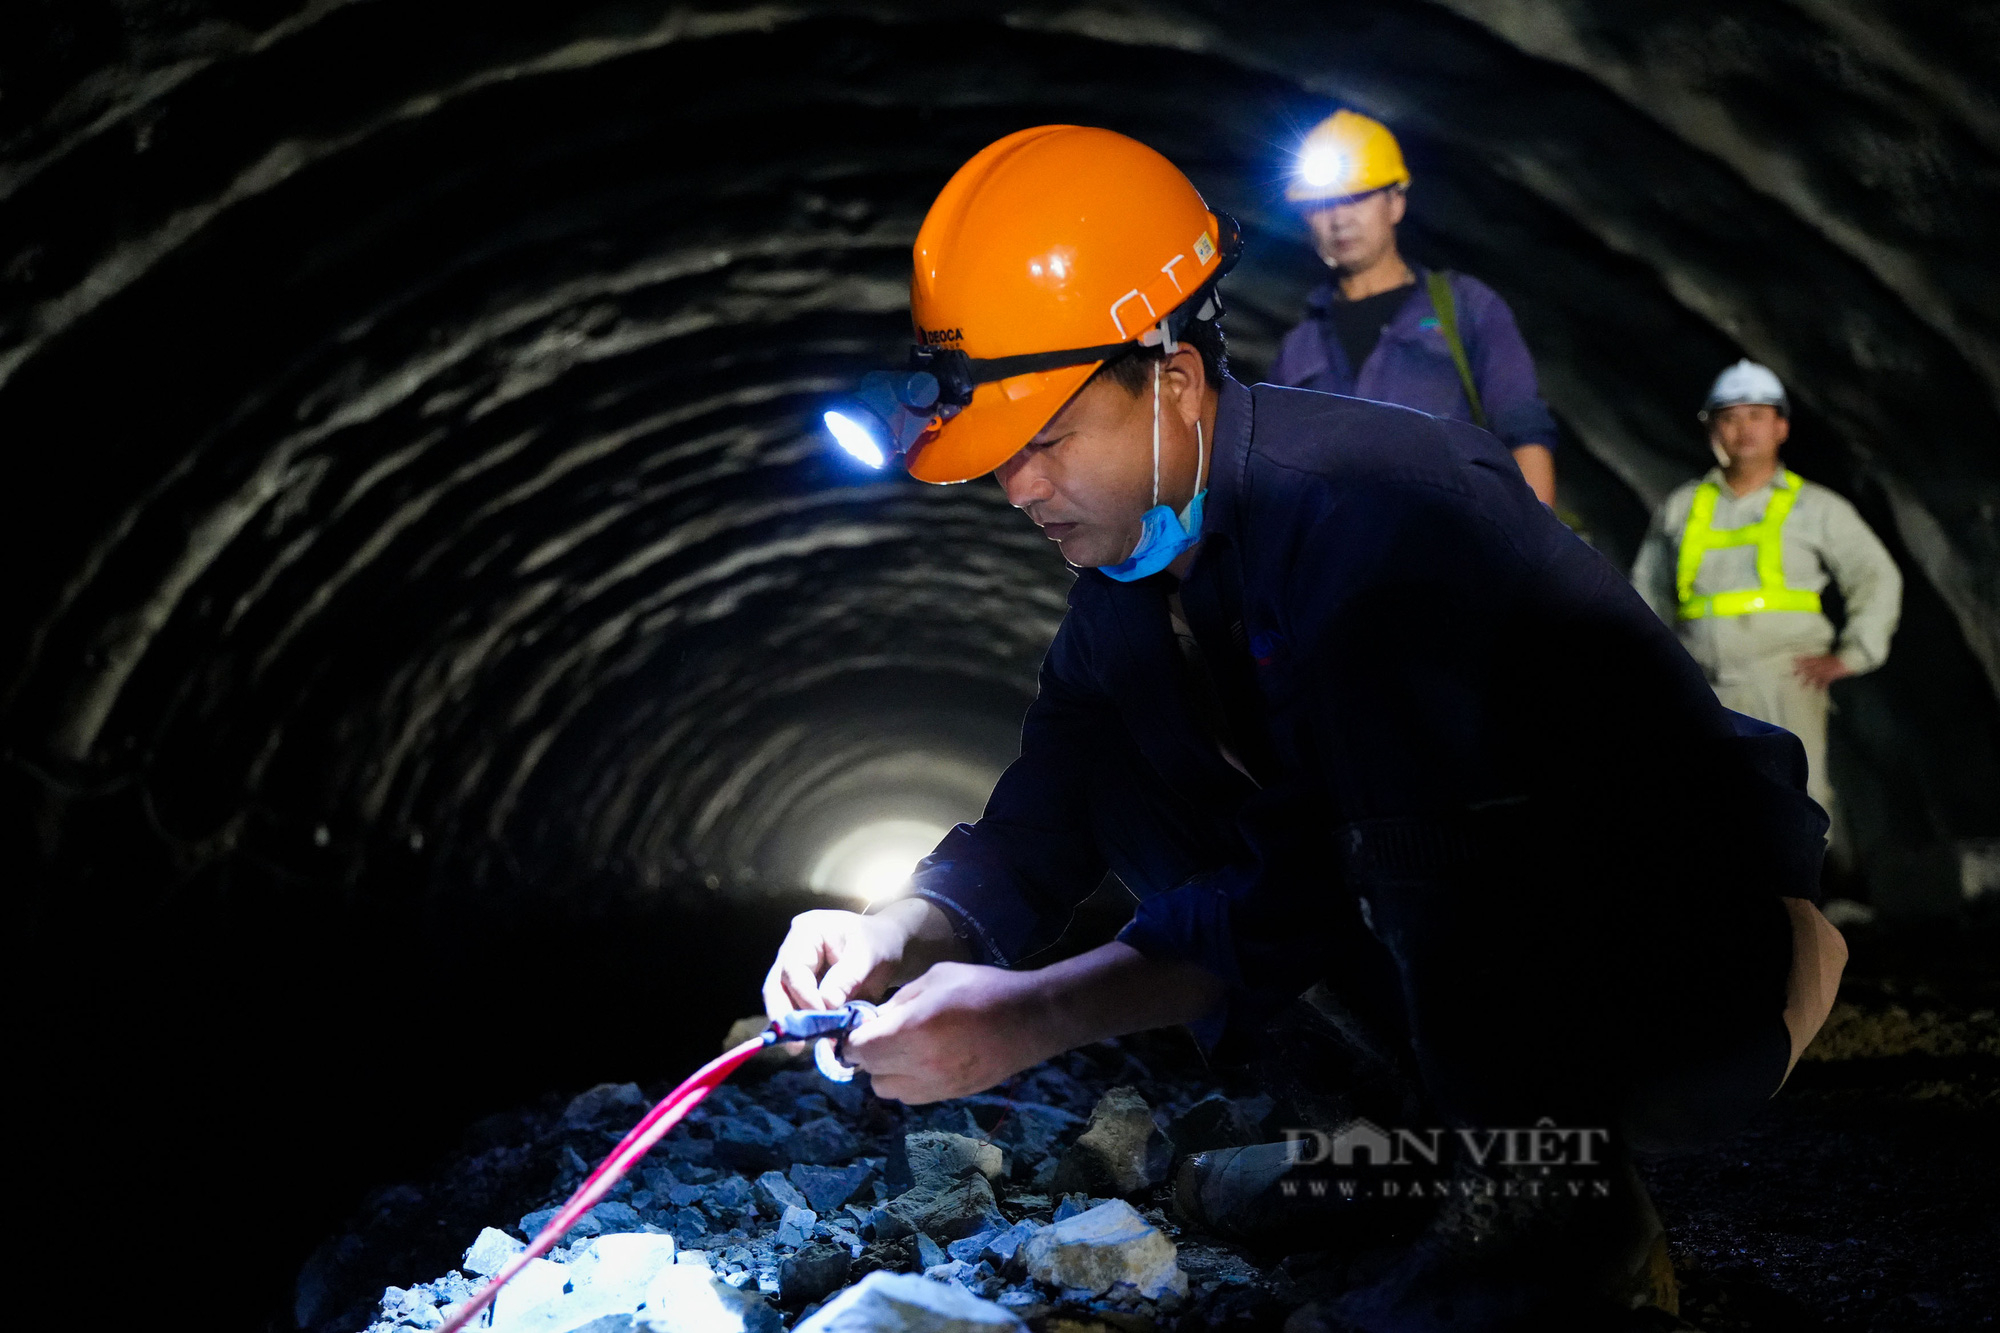 Cận cảnh 3 đường hầm xuyên núi nối 3 tỉnh Ninh Bình - Thanh Hoá - Nghệ An - Ảnh 9.